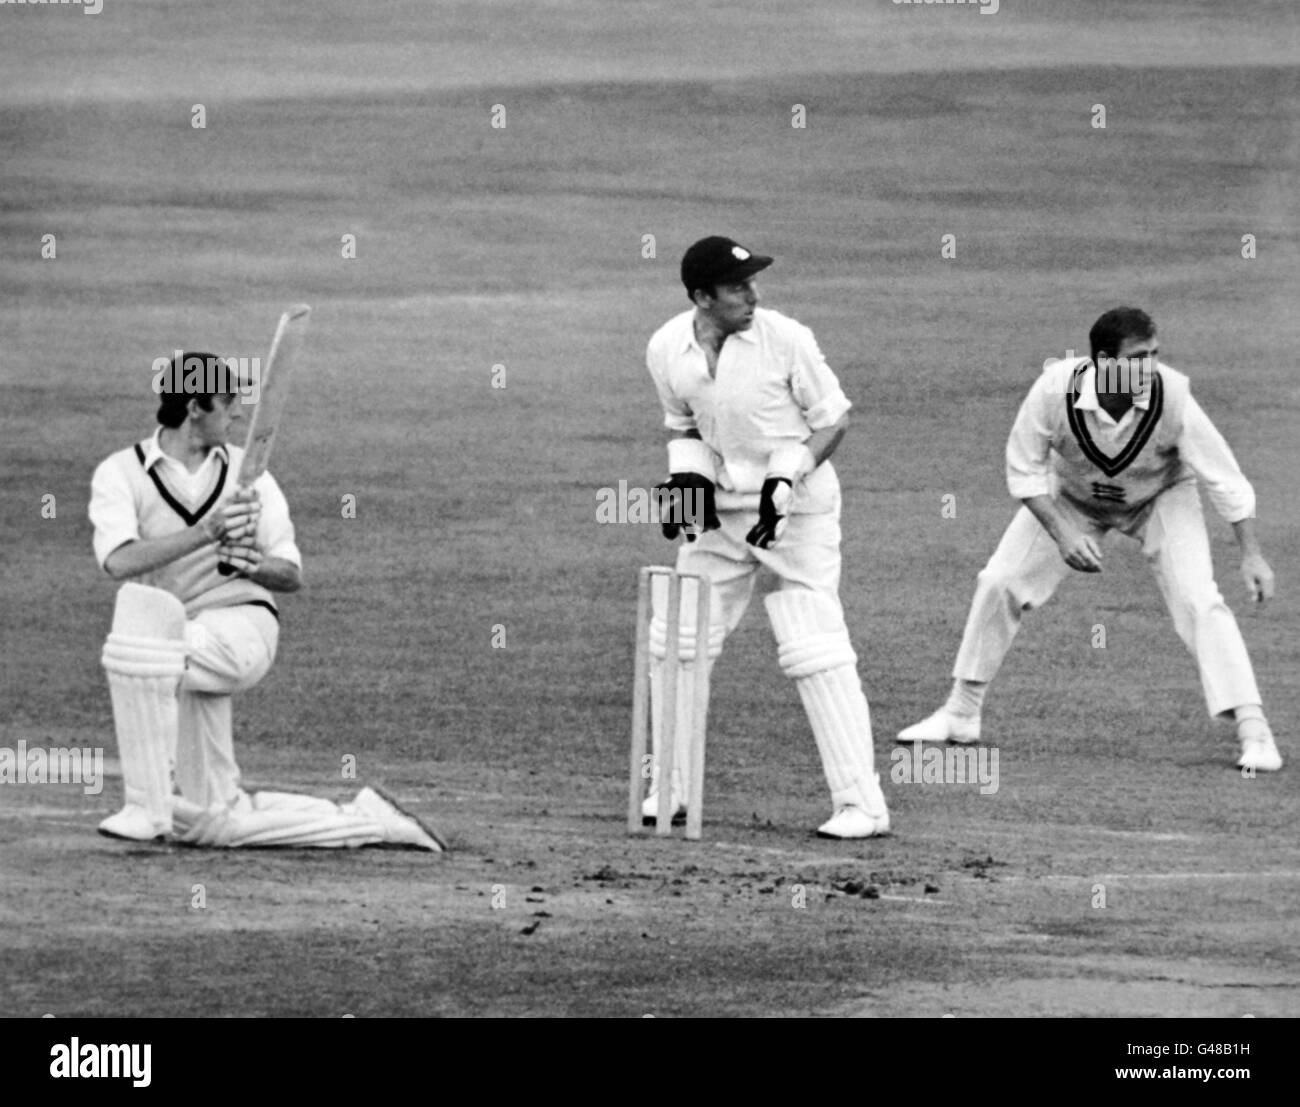 Cricket - Championnat du comté - Middlesex / Derbyshire - Premier jour - Lord's.Mike page (Derbyshire) joue une balle de Fred Titmus Banque D'Images